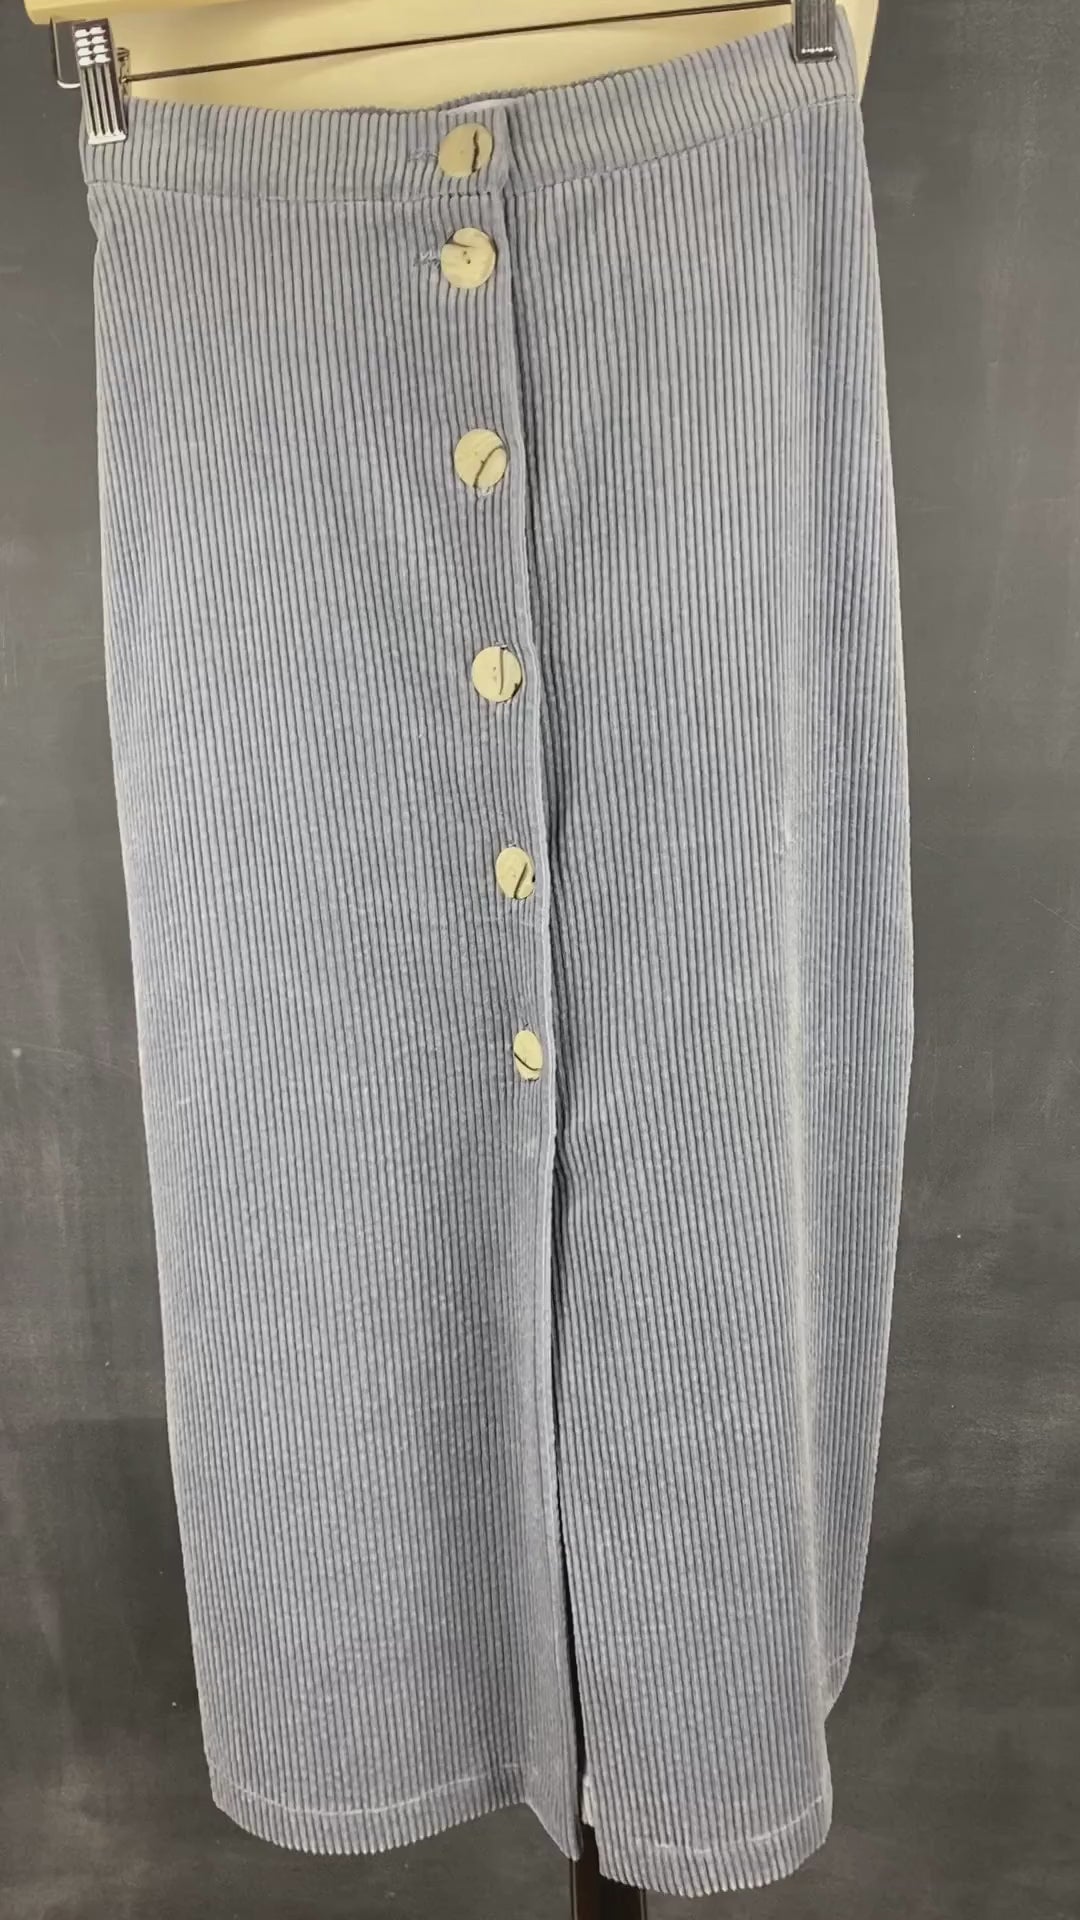 Jupe midi boutonnée gris-bleu en velours côtelé Essentiels &Co, taille small (xs). Vue de la vidéo qui présente les détails de la jupe.